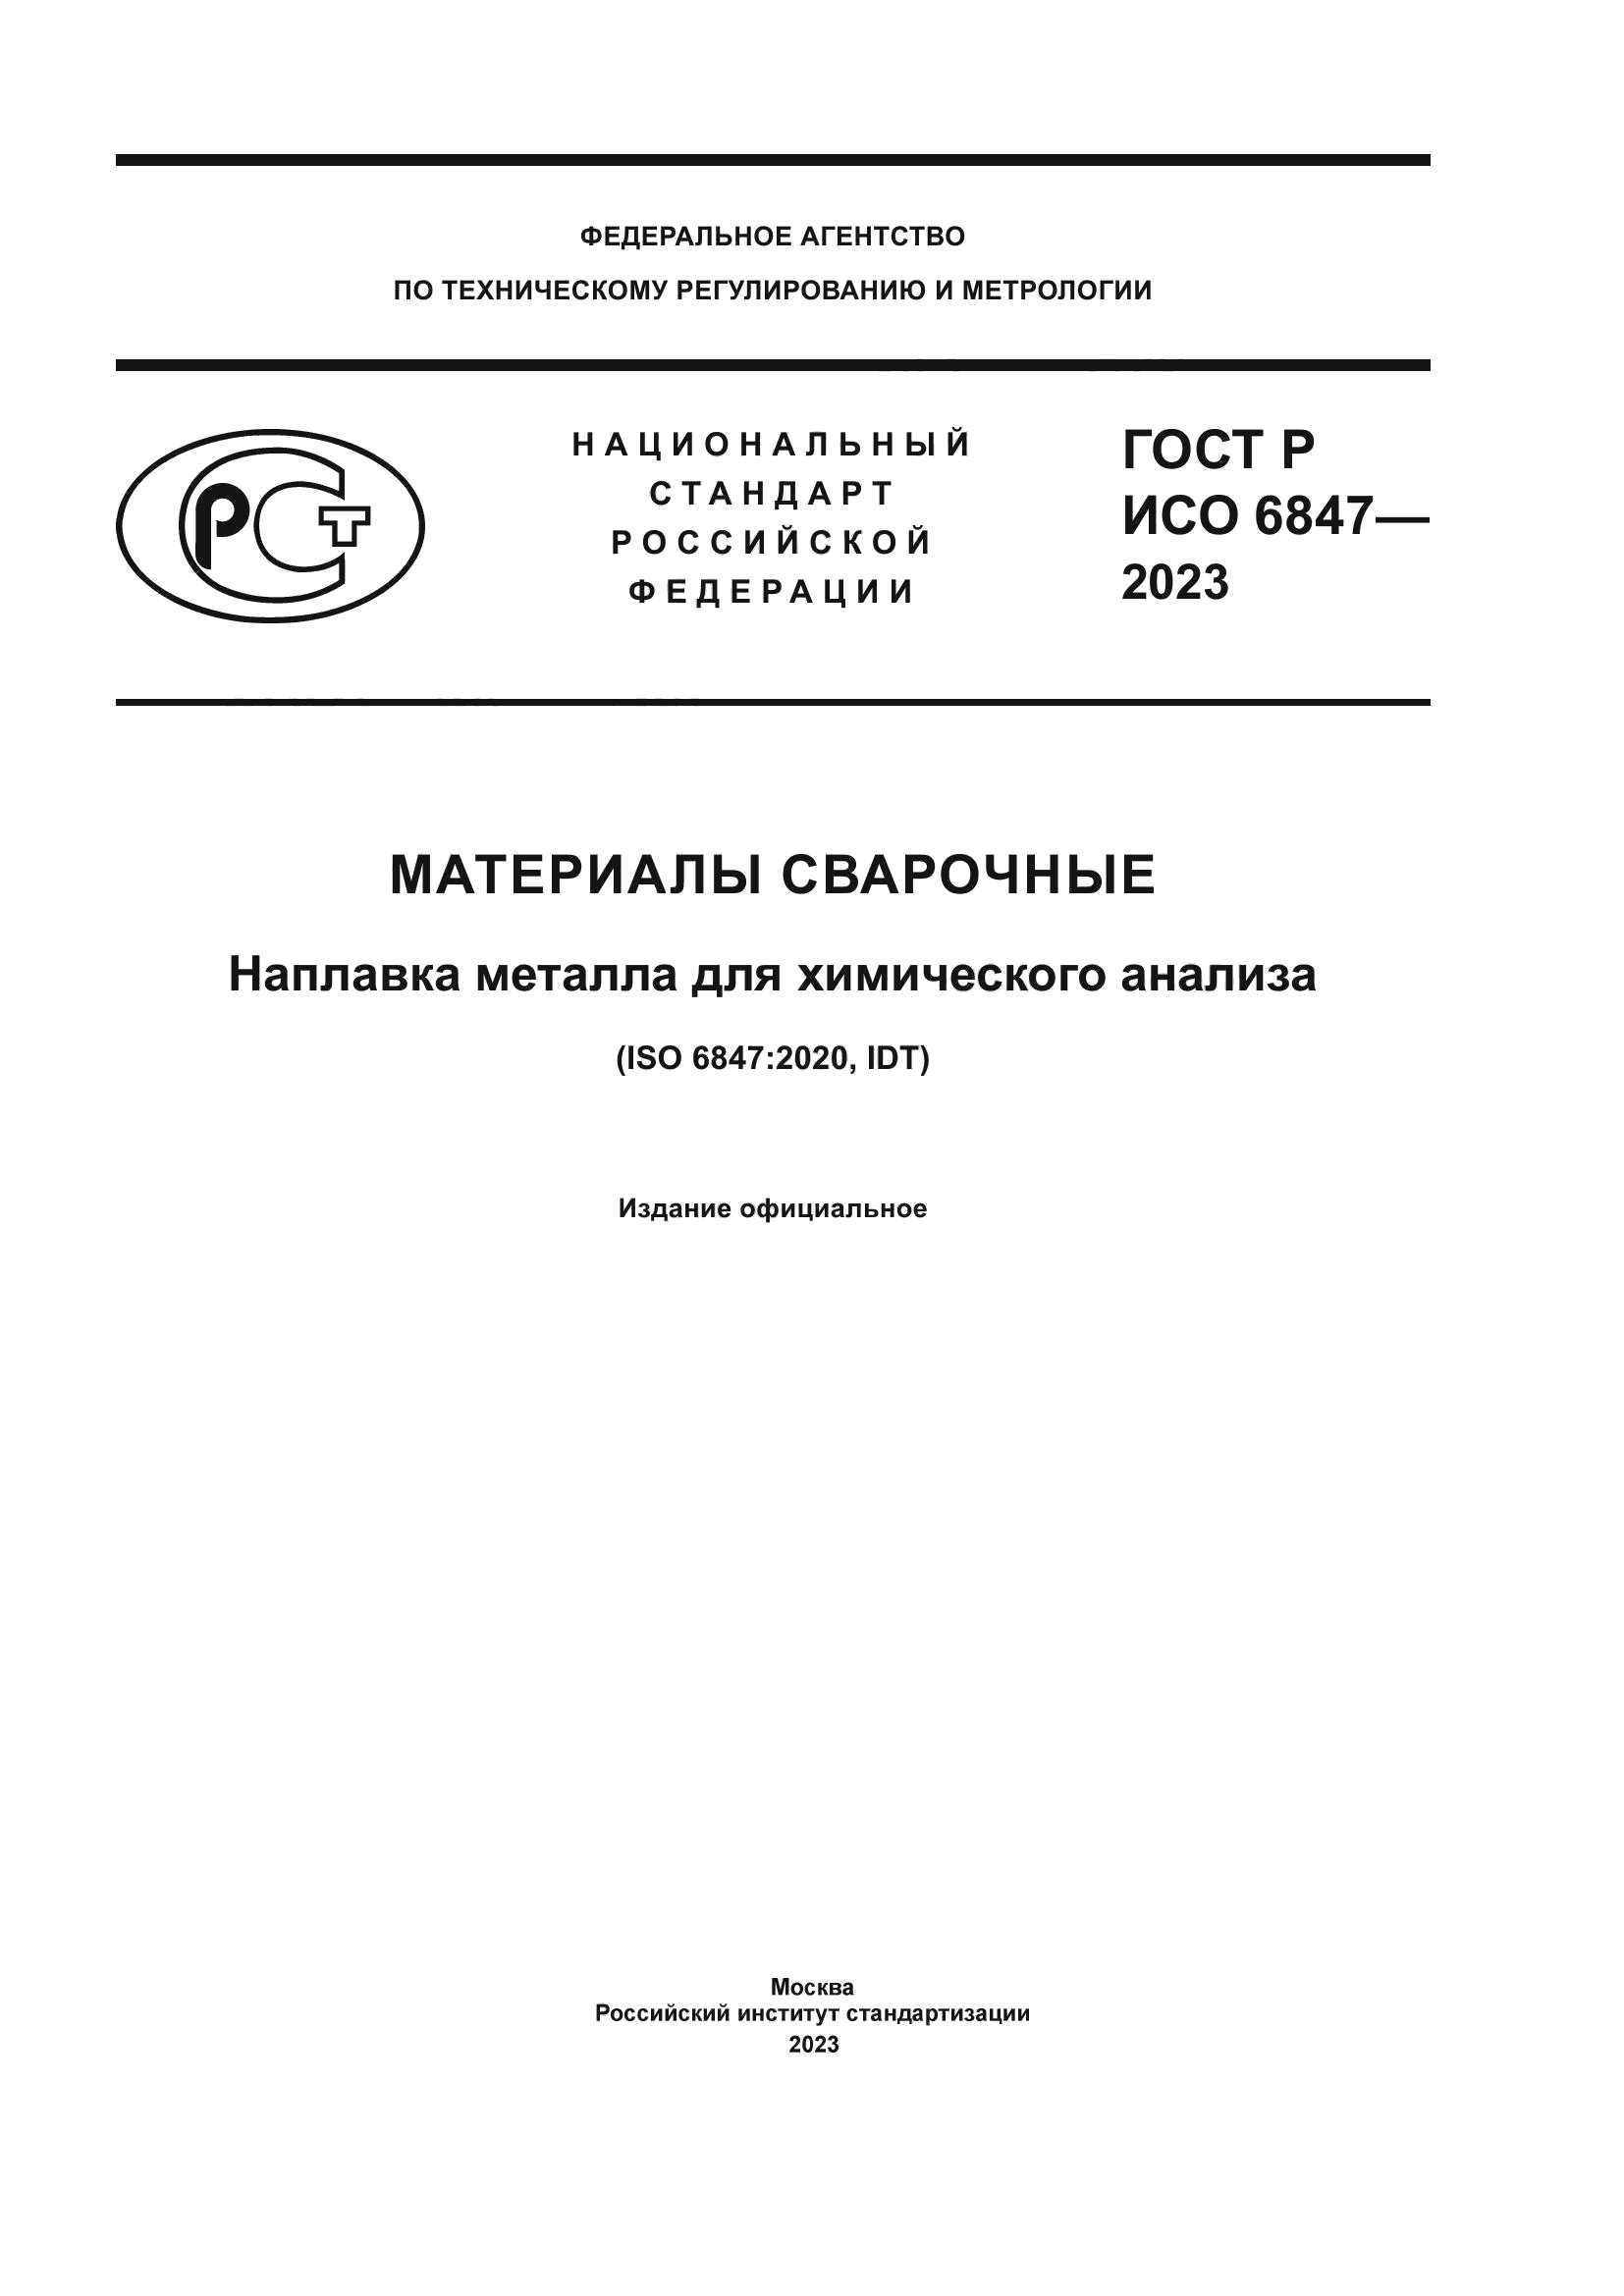 ГОСТ Р ИСО 6847-2023